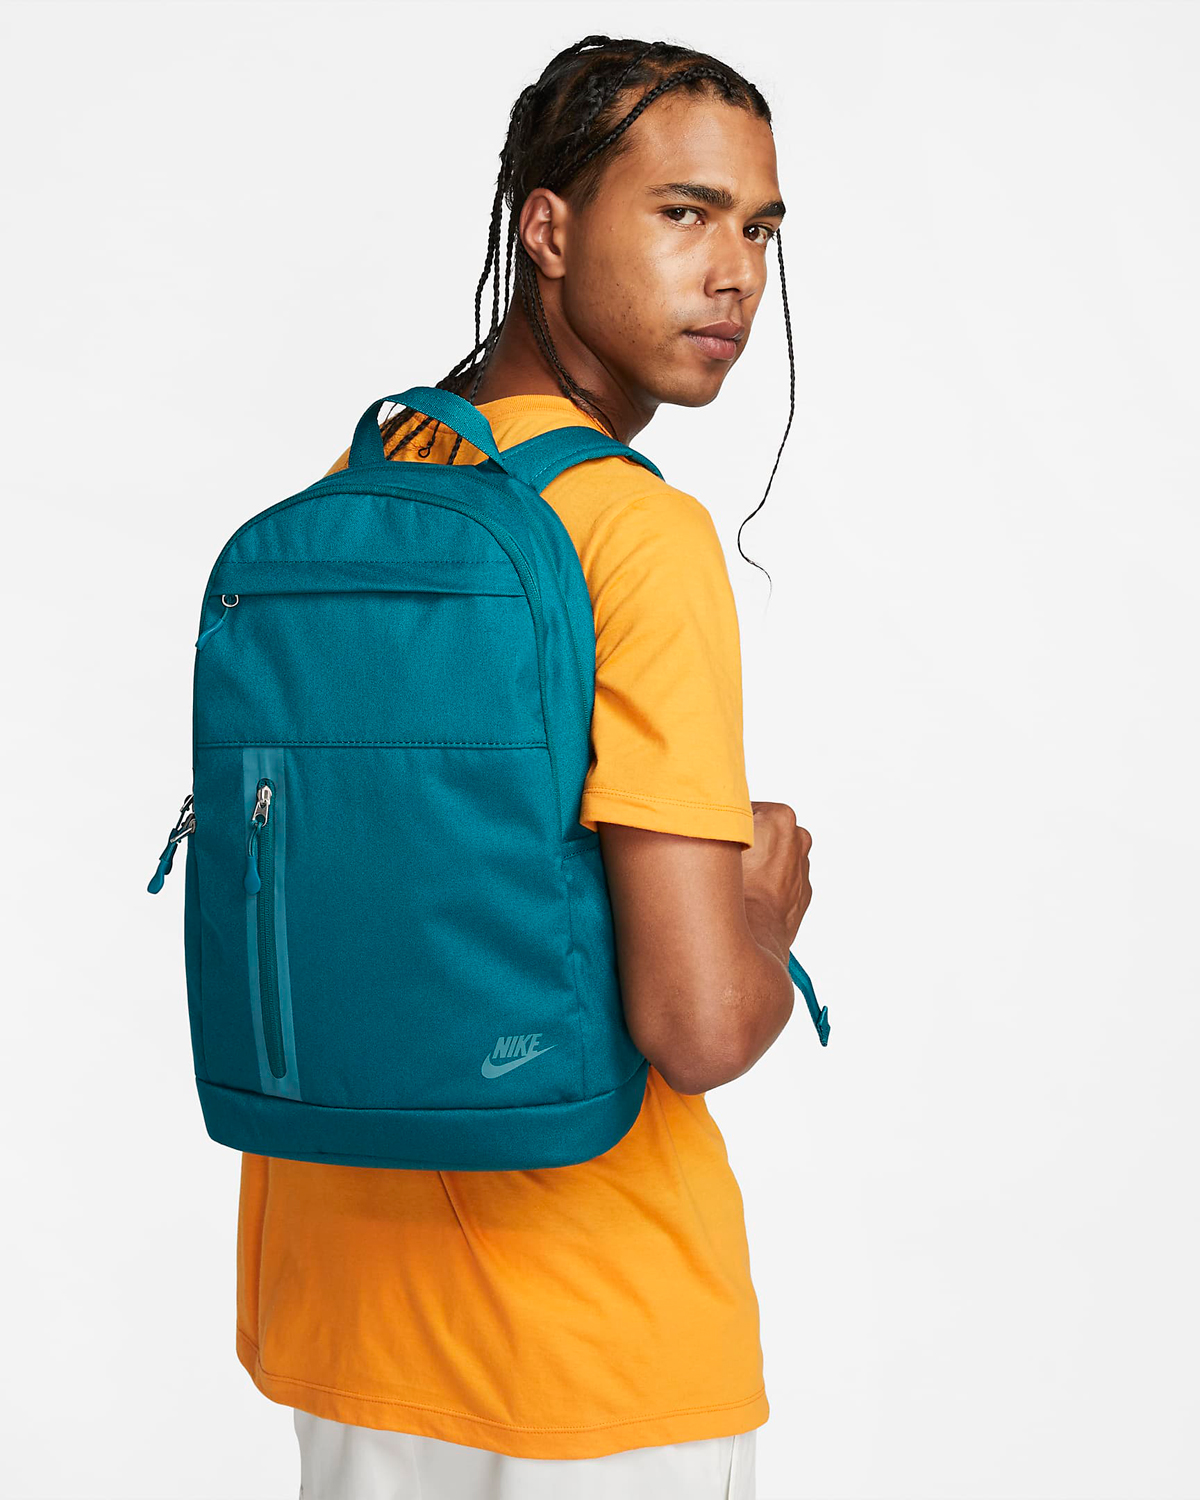 Nike-Elemental-Premium-Backpack-Geode-Teal